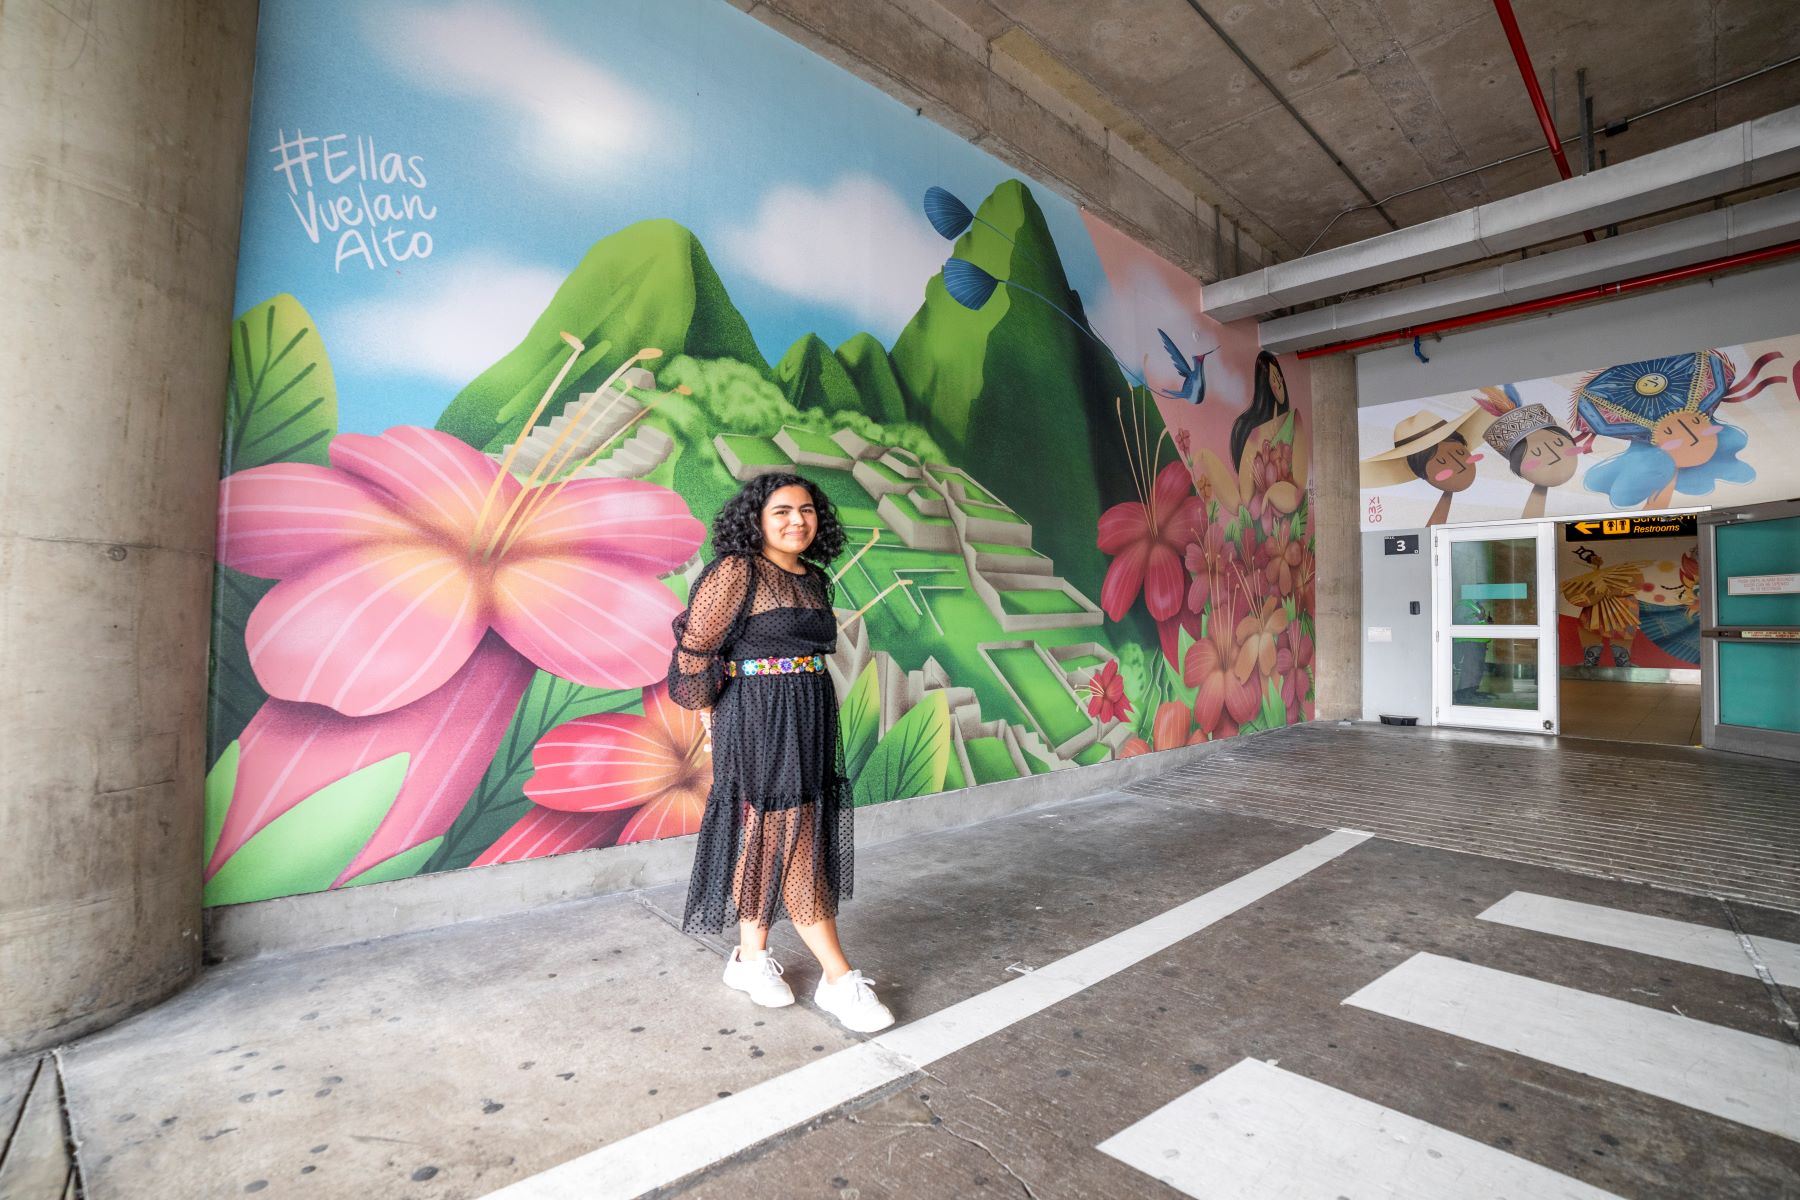 LAP celebra Día de la Mujer con inauguración de murales artísticos “Ellas vuelan alto”